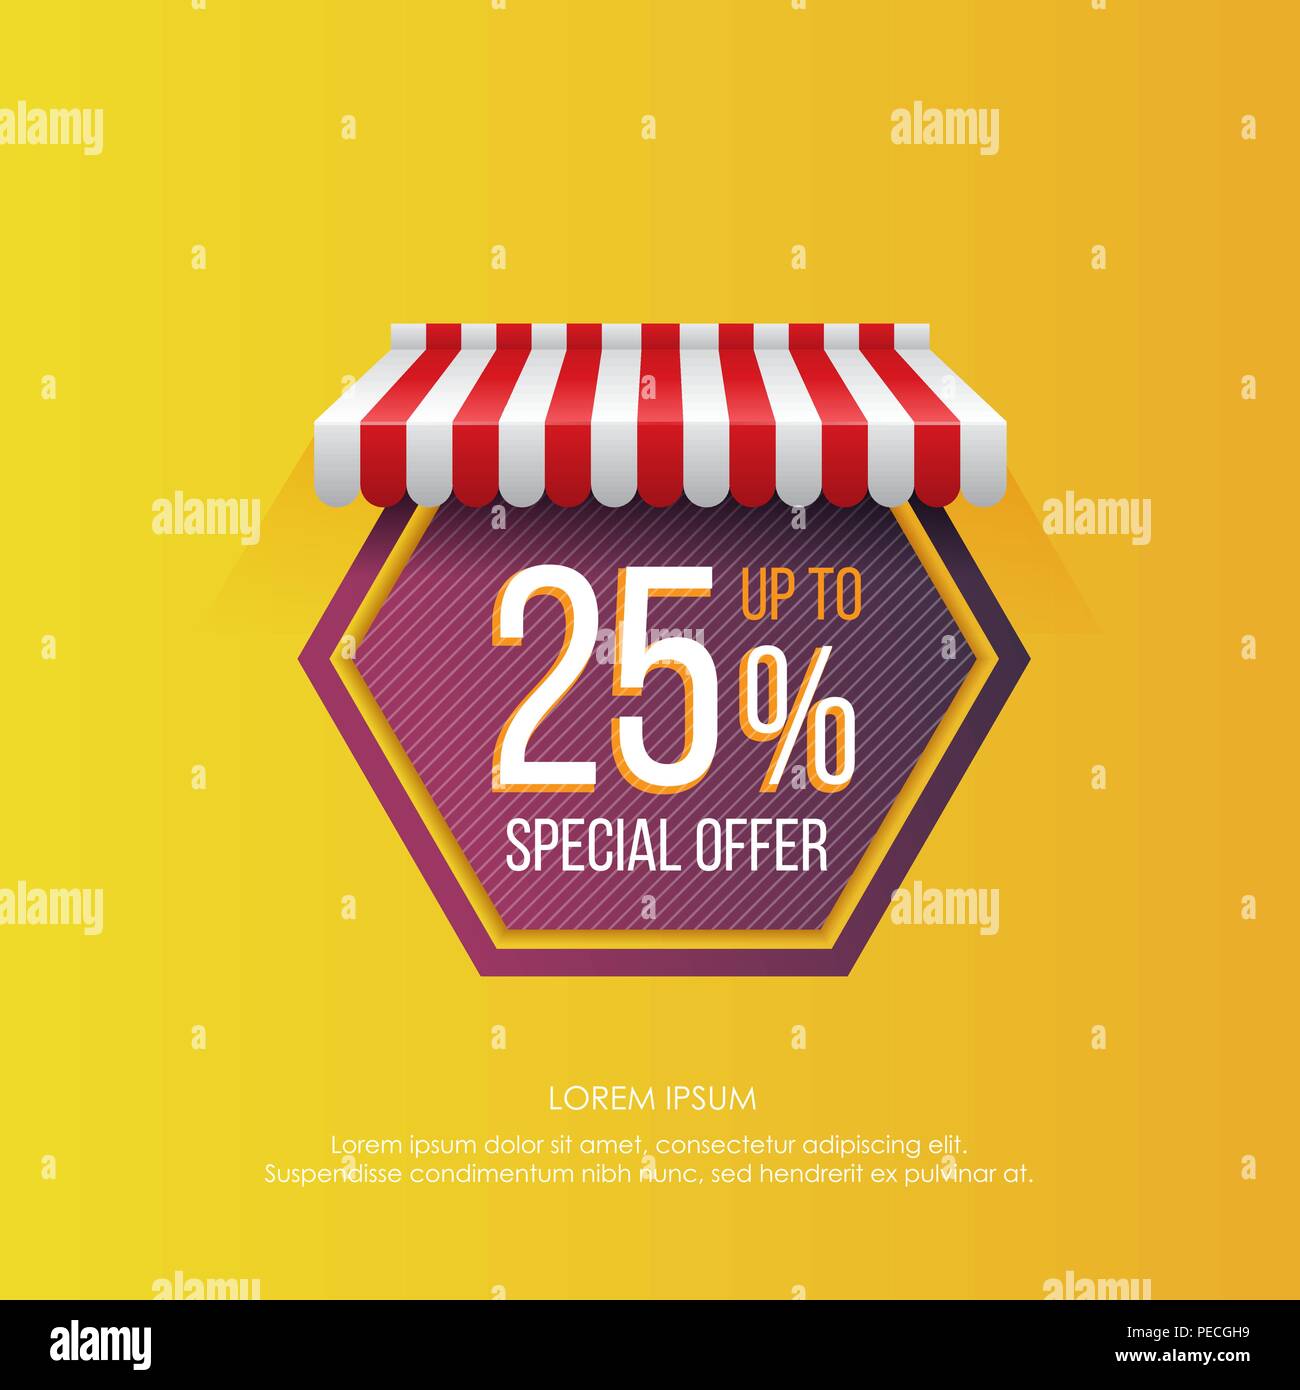 Design lumineux de balise dans la figure hexagonale forme avec la promotion de l'offre spéciale ventes jusqu'à 25 % sur fond jaune vif Illustration de Vecteur